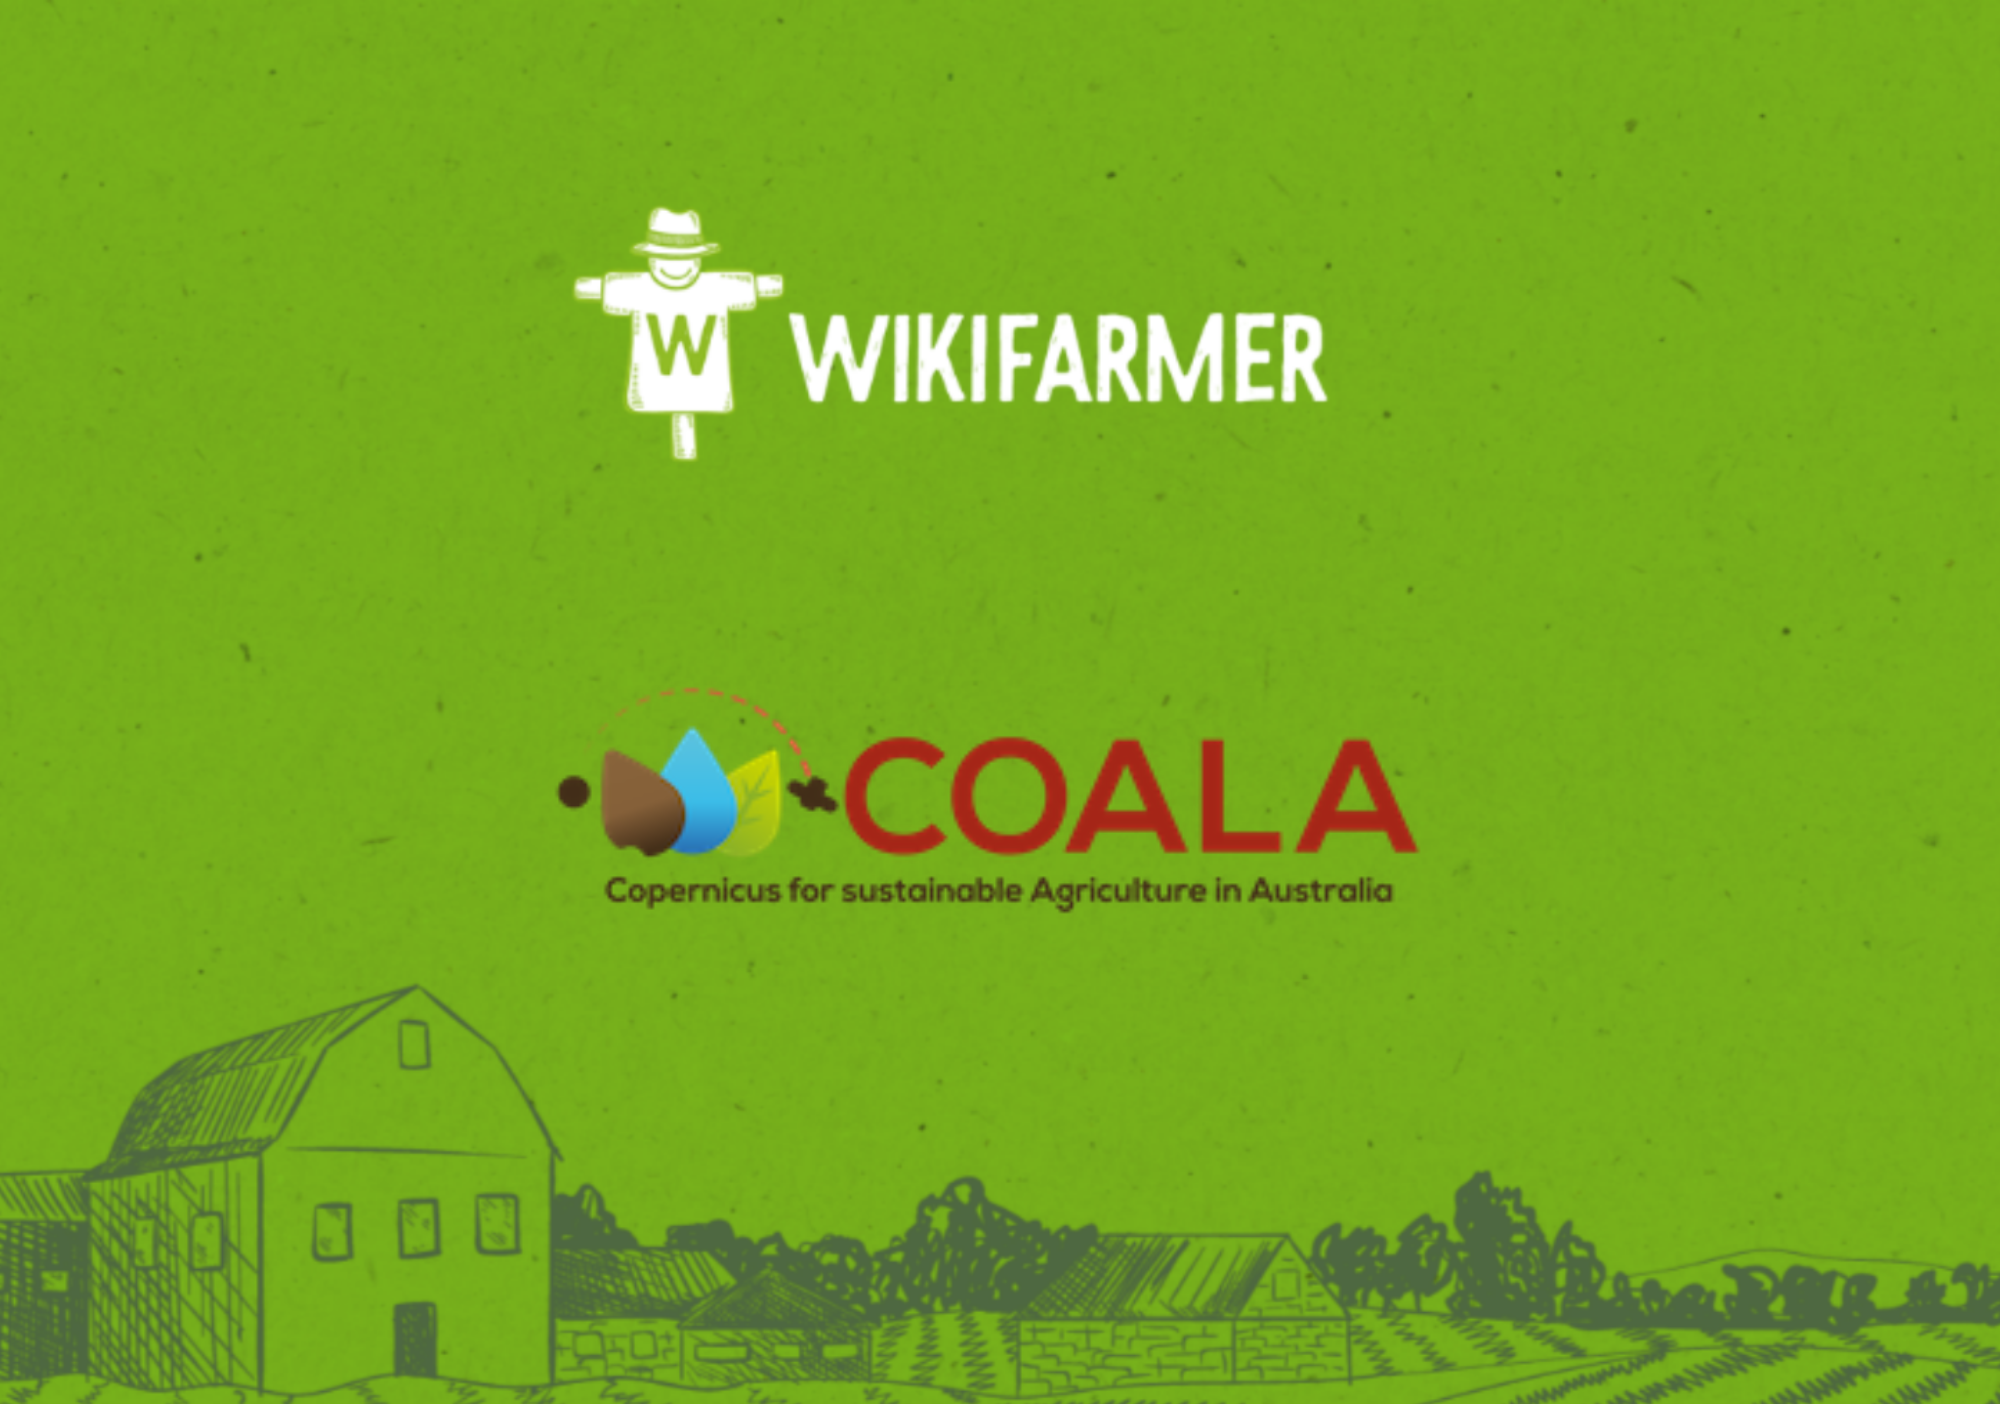 Partnership between Wikifarmer and COALA